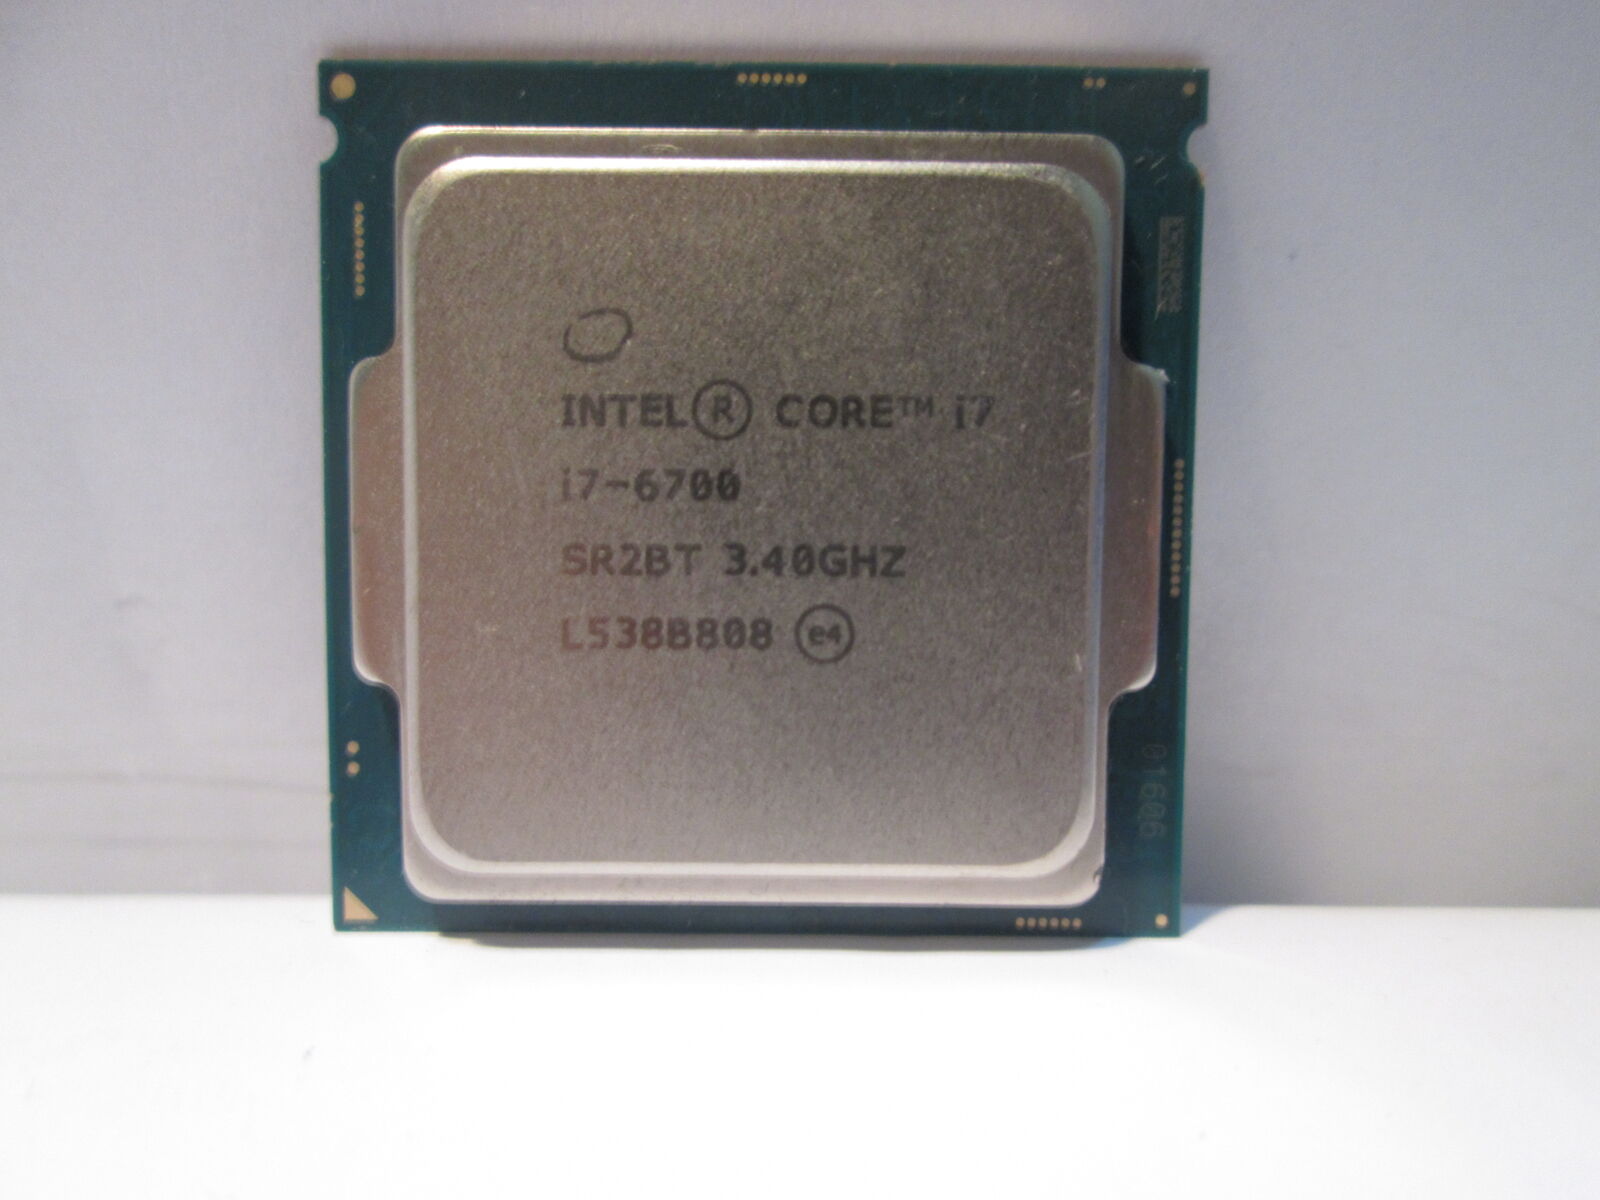 Intel Core i7 i7-6700 3.40GHz SR2BT Desktop Processor Socket 1151 Quad Core CPU